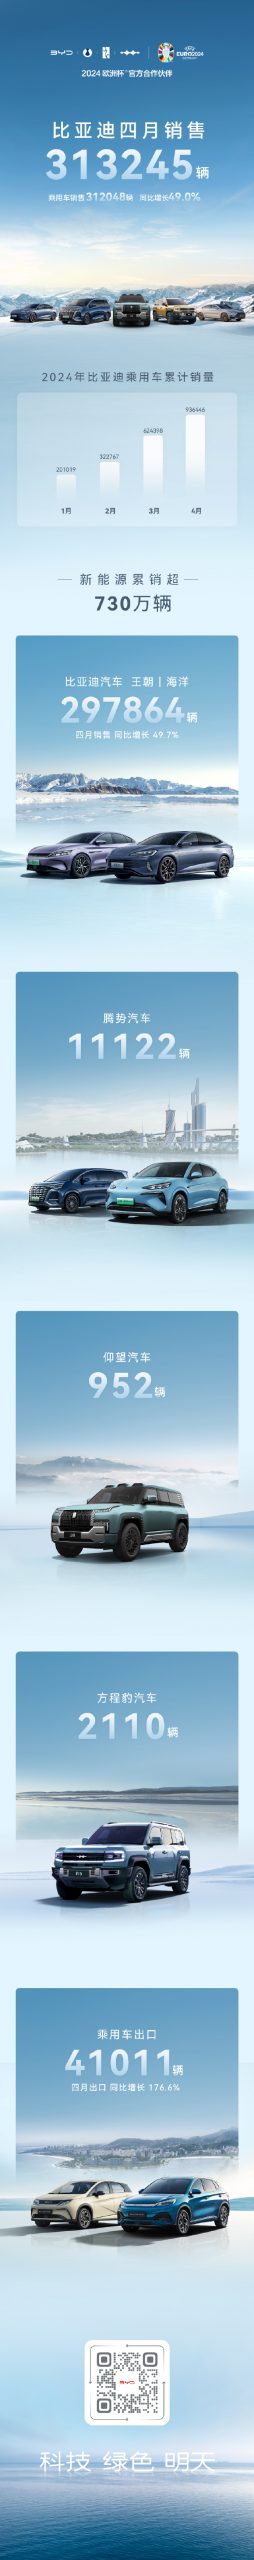 比亚迪4月新能源汽车销量313245辆，同比增长48.96%